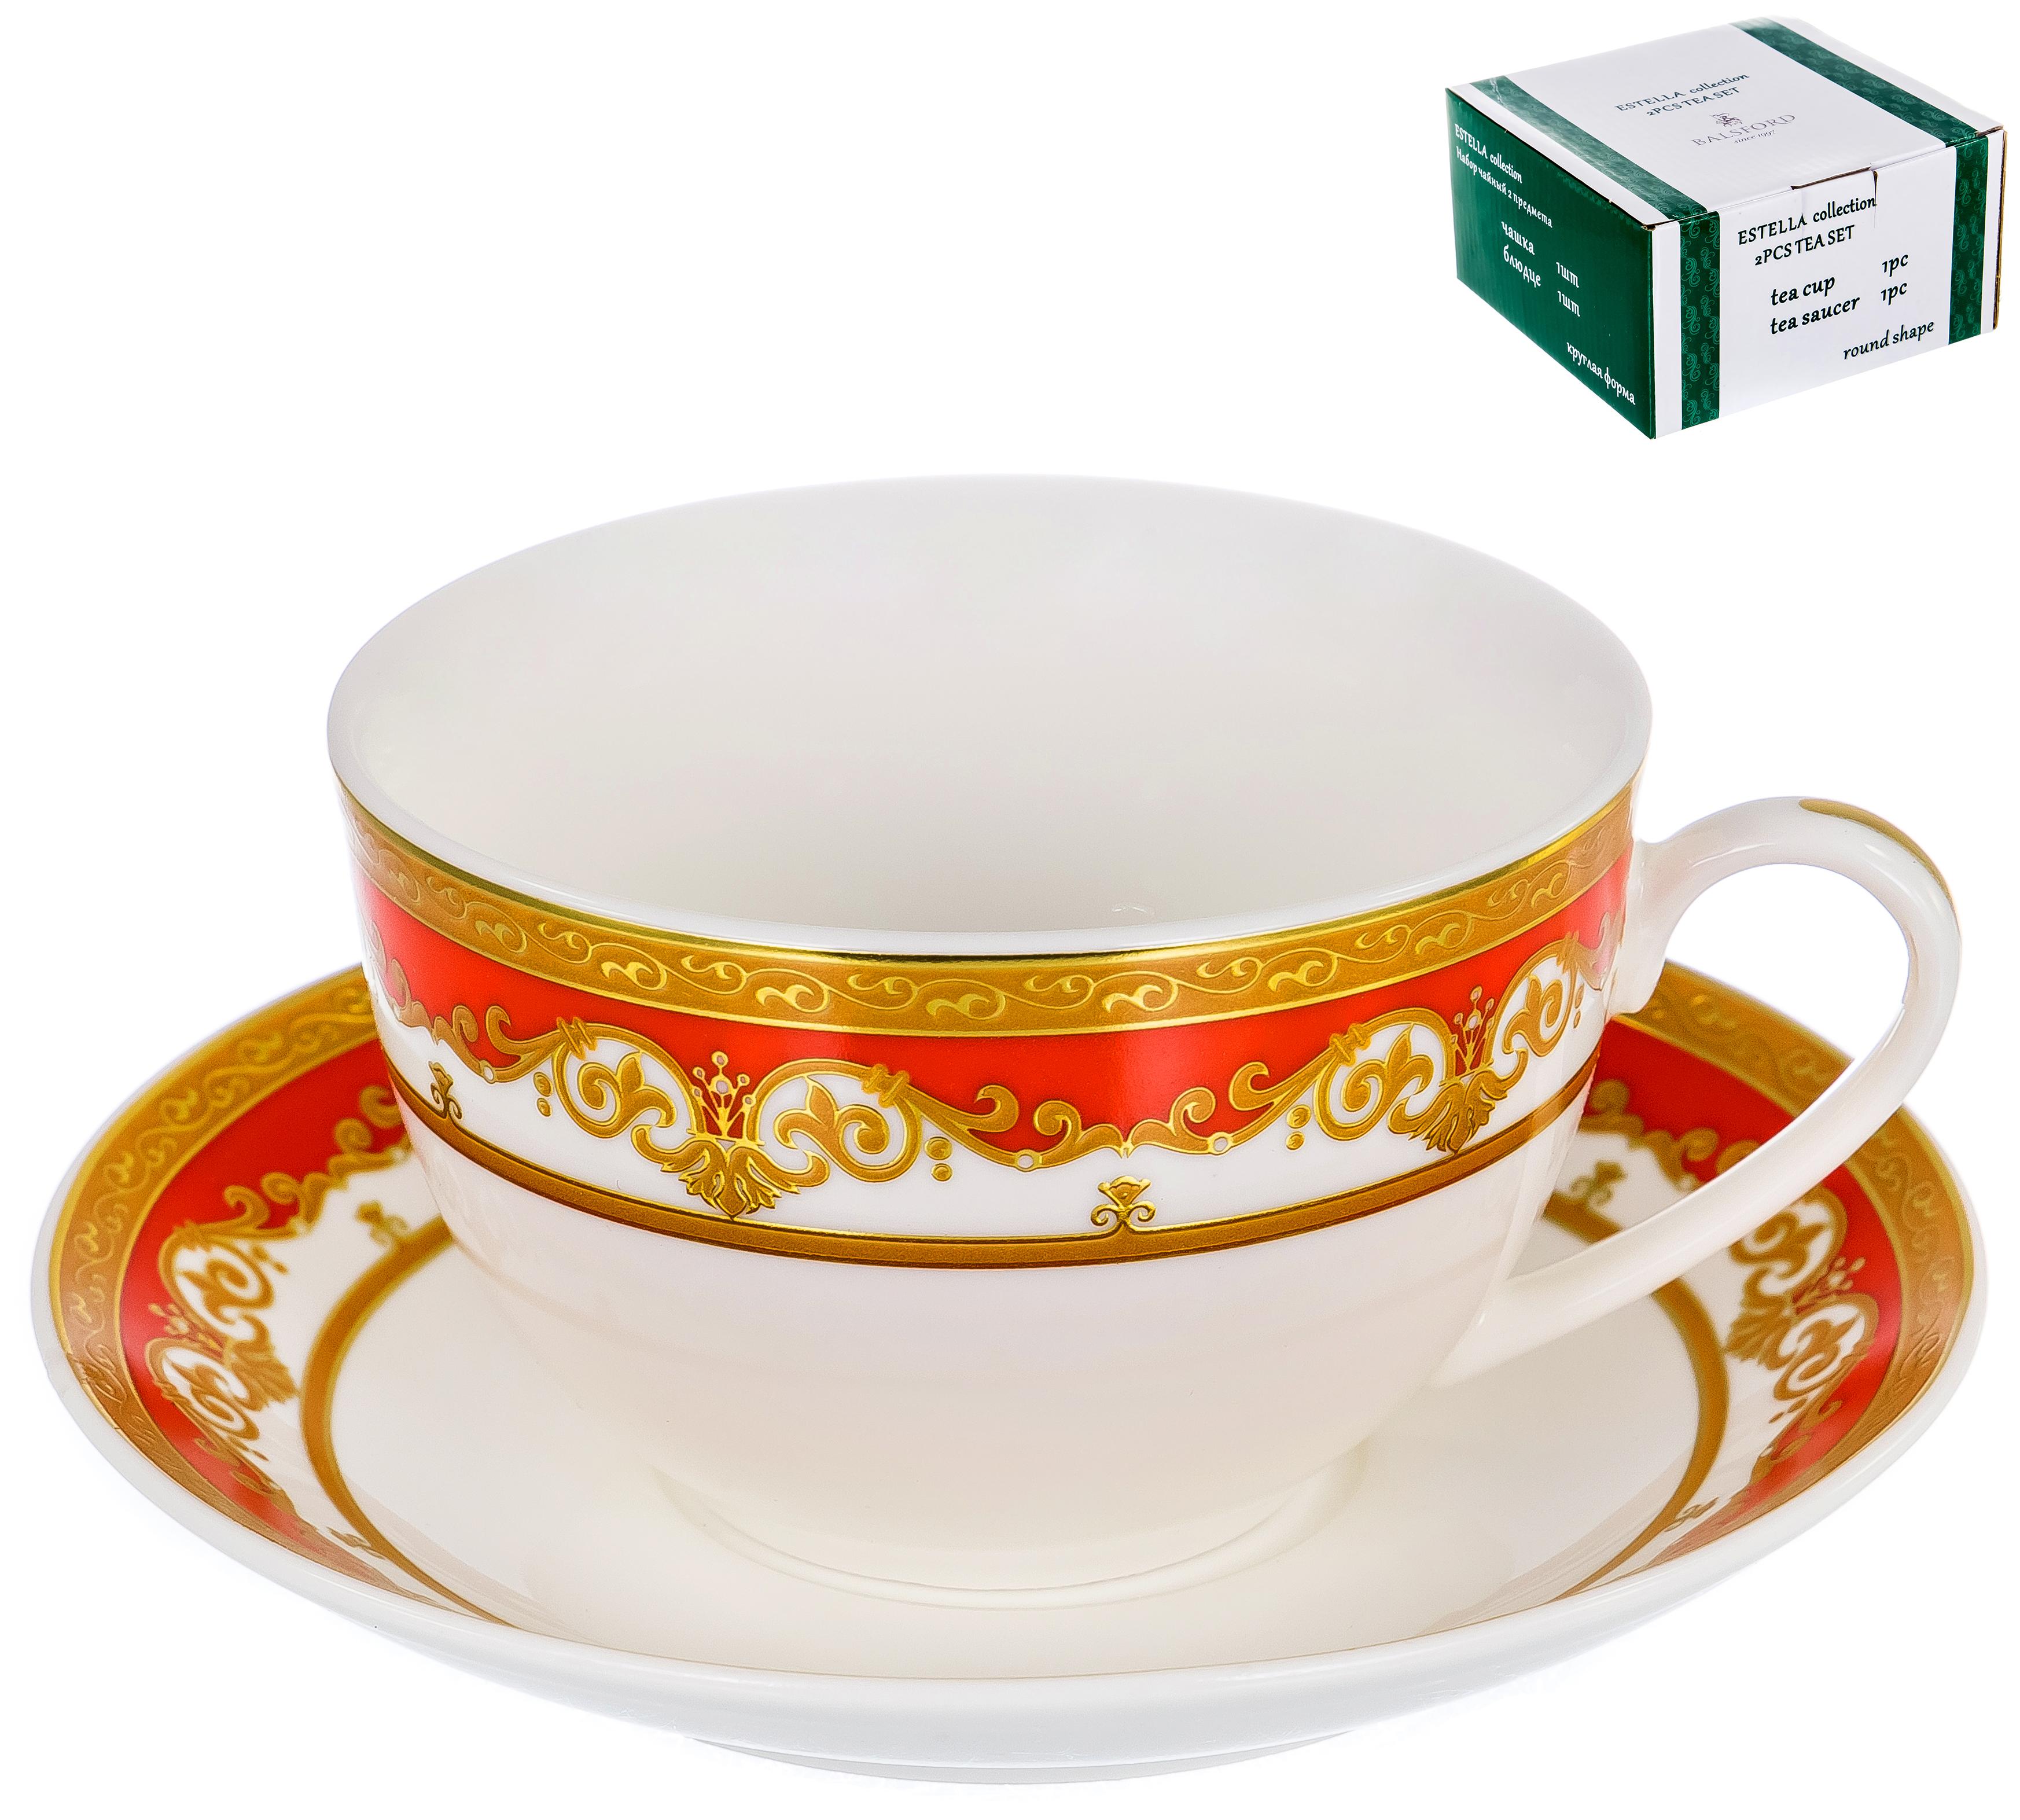 ЭСТЕЛЛА, набор чайный (2) чашка 240мл + блюдце, NEW BONE CHINA, цвет дизайн с золотом 123-16017